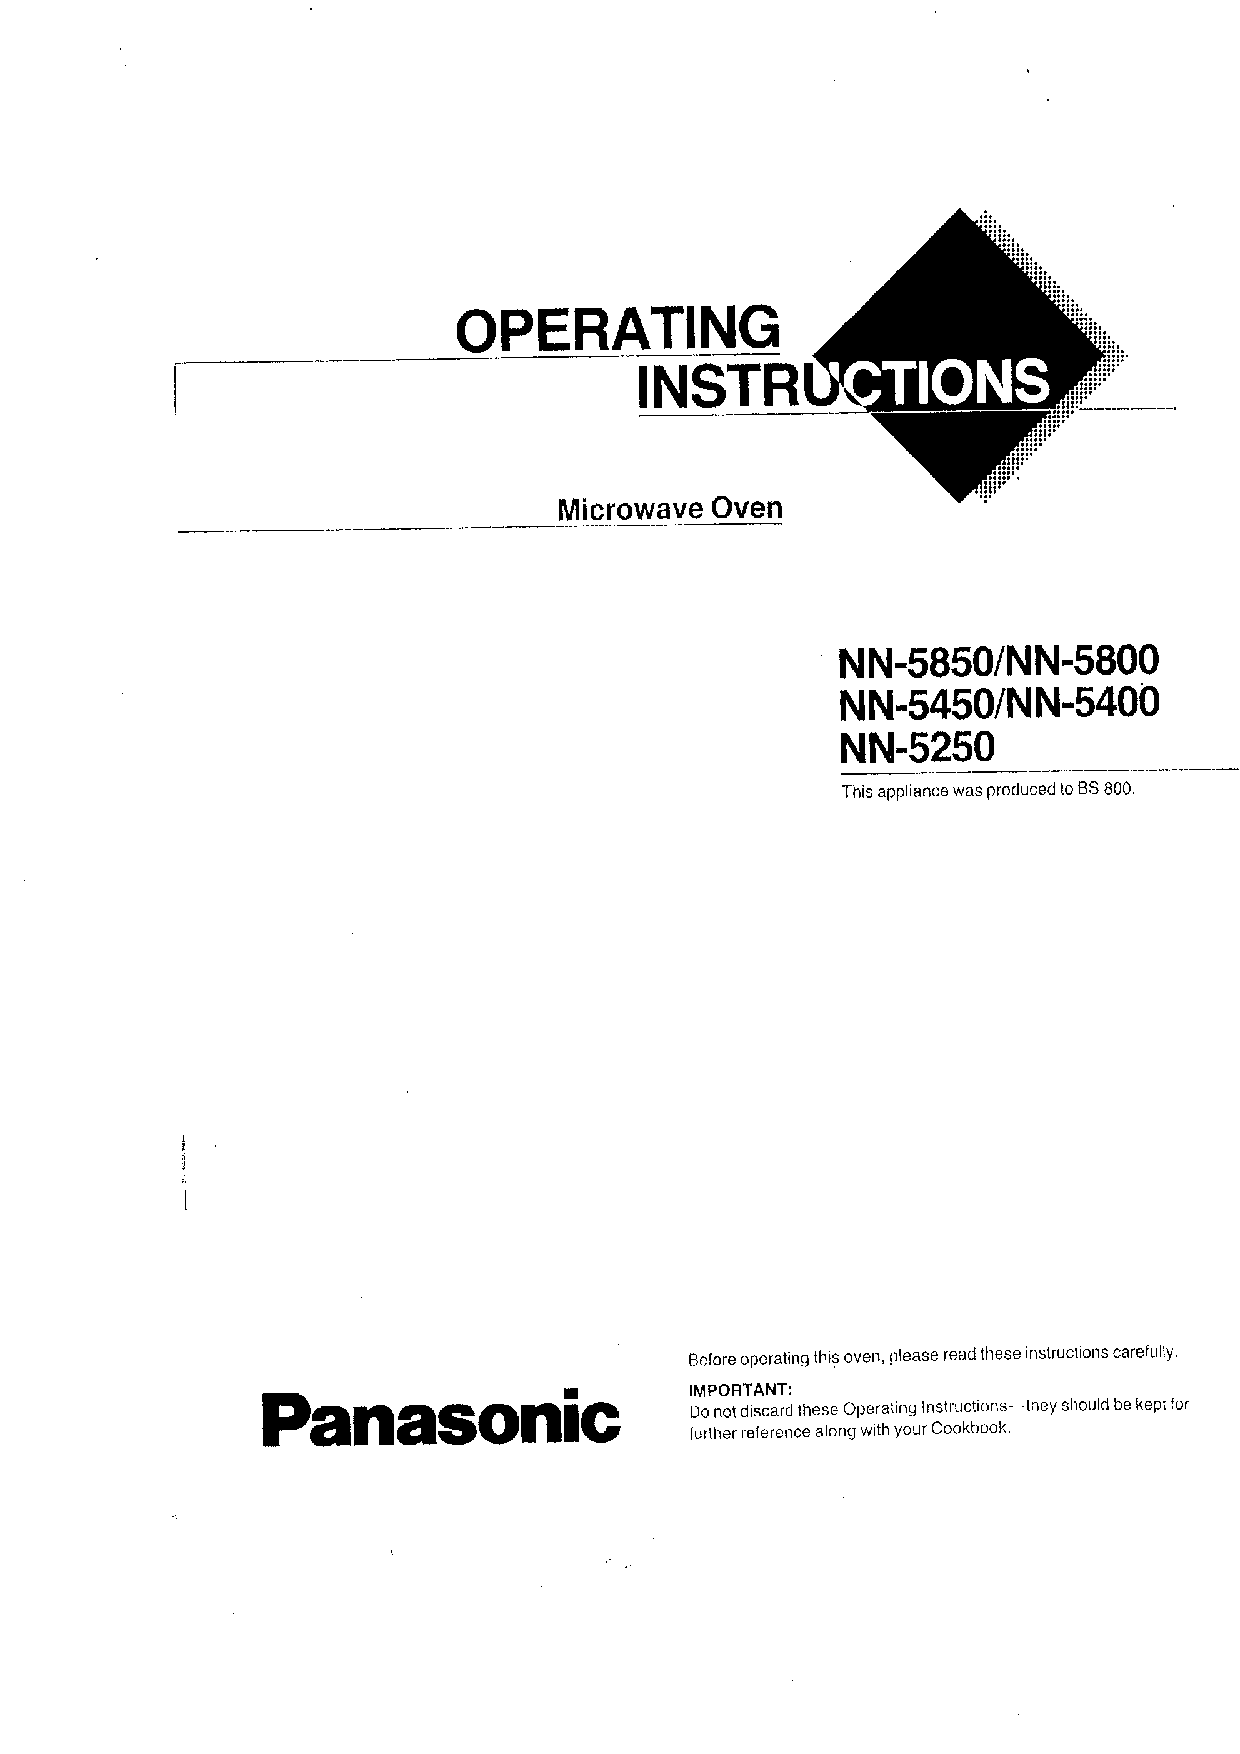 Panasonic NN-5400, NN-5800, NN-5850, NN-5450, NN-5250 User Manual